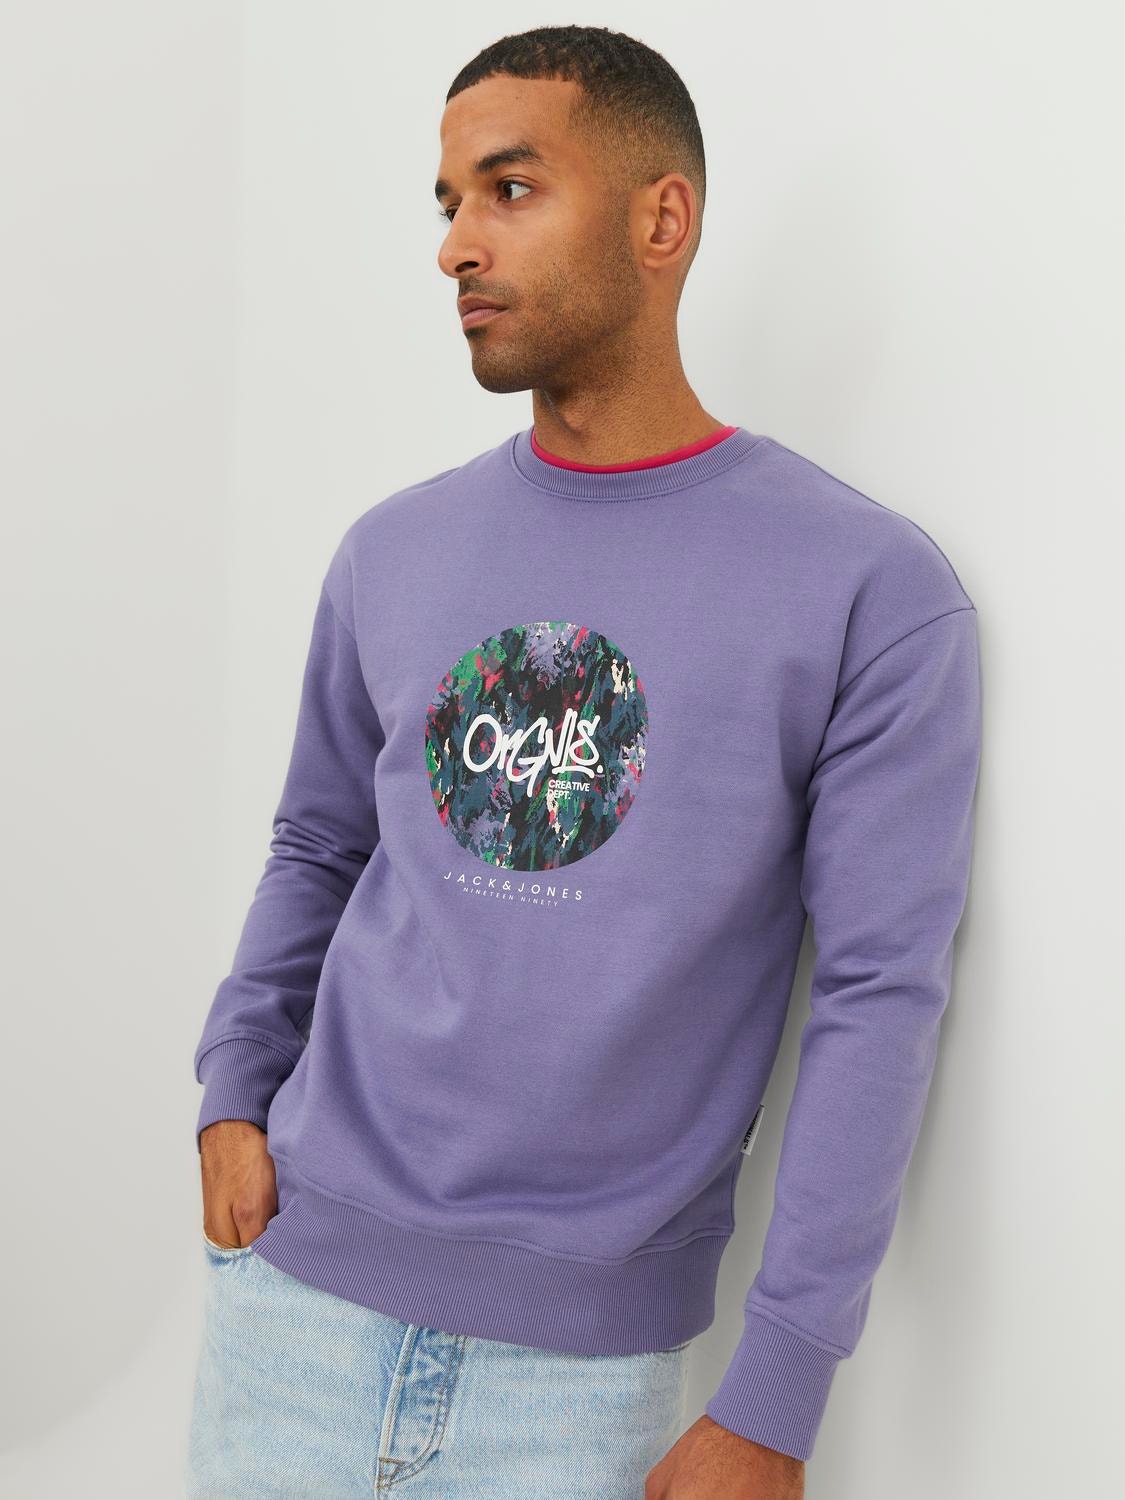 Jack & Jones Printed Crewn Neck Sweatshirt -Twilight Purple - 12242366